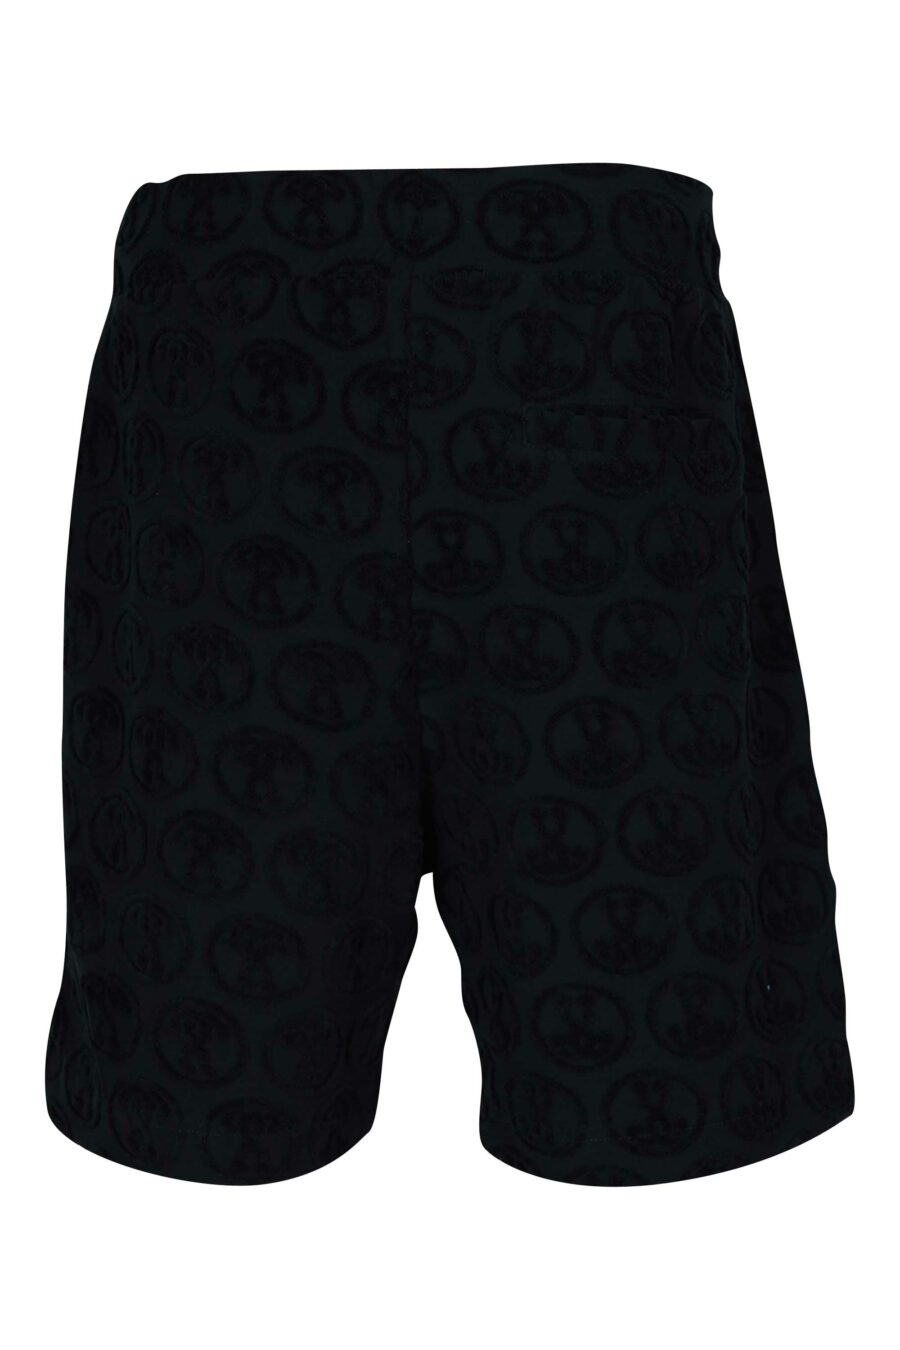 Pantalón corto negro "all over logo" doble pregunta - 667113684130 1